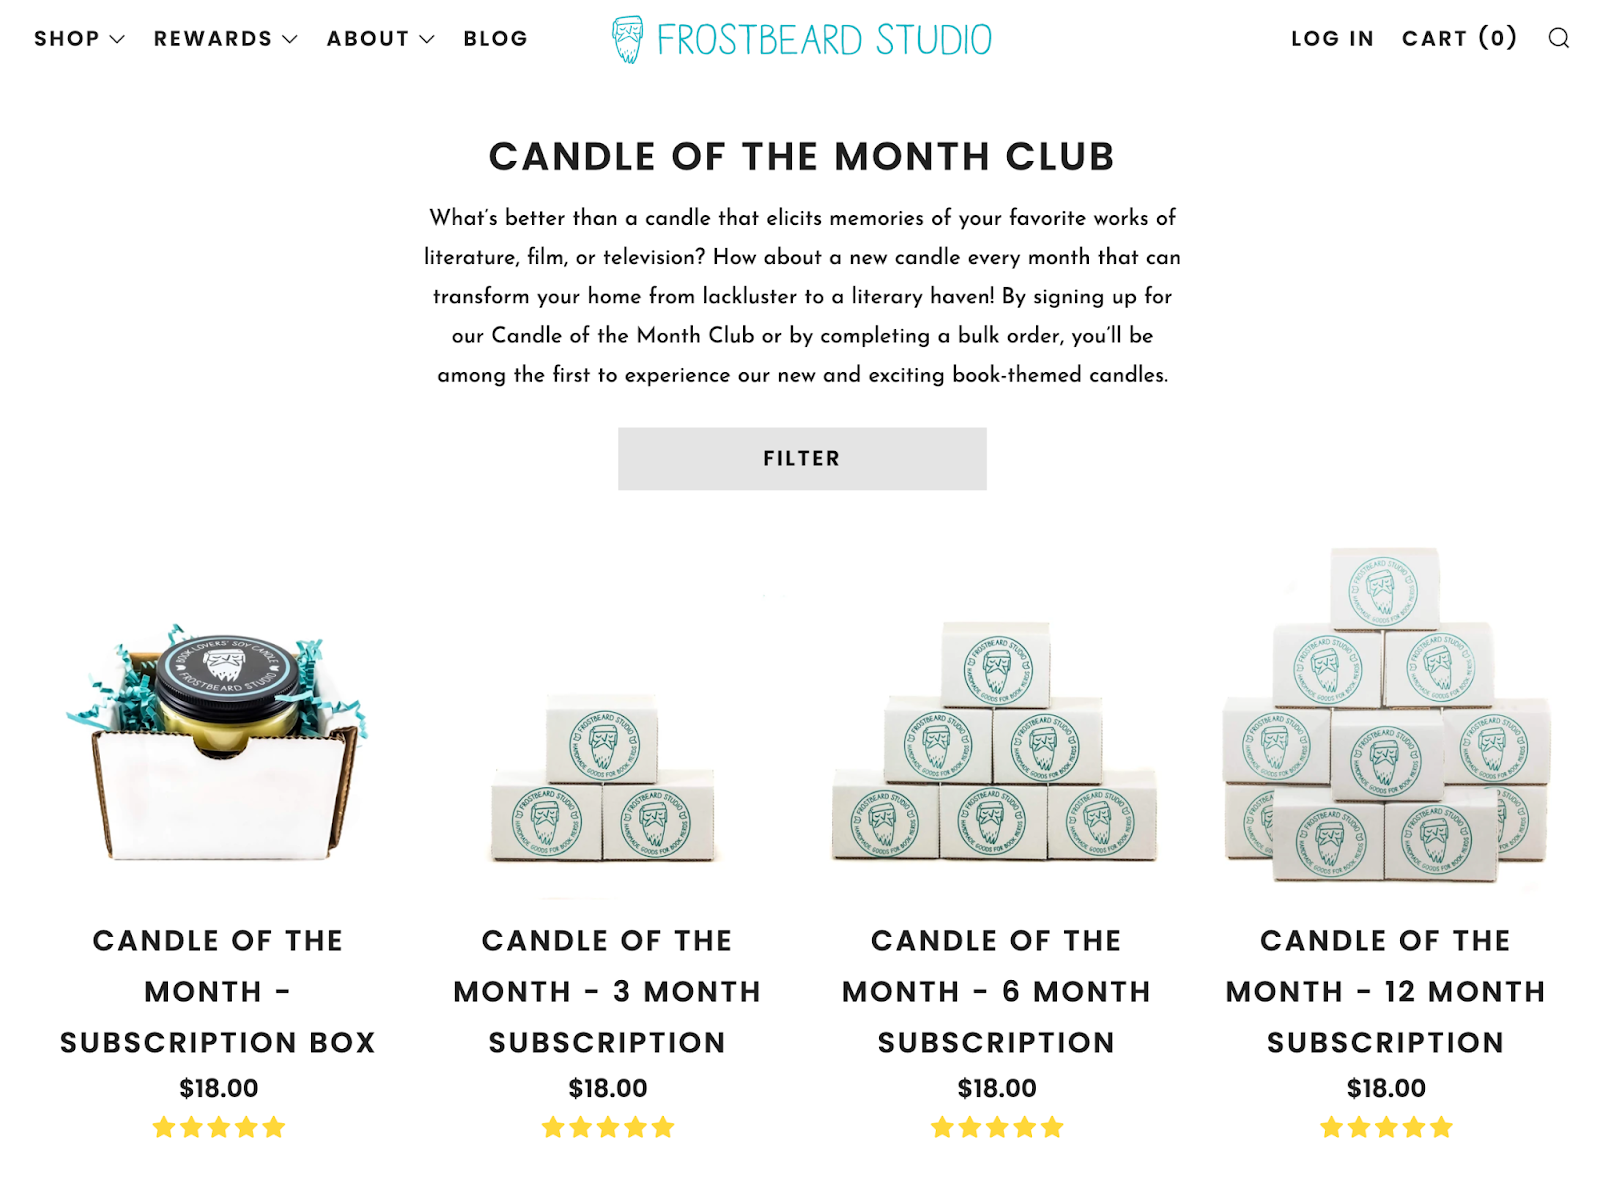 Screenshot der Abo-Seite von Frostbeard Studio cwo alle Kerzen zu sehen sind, die im Abonnement verkauft werden